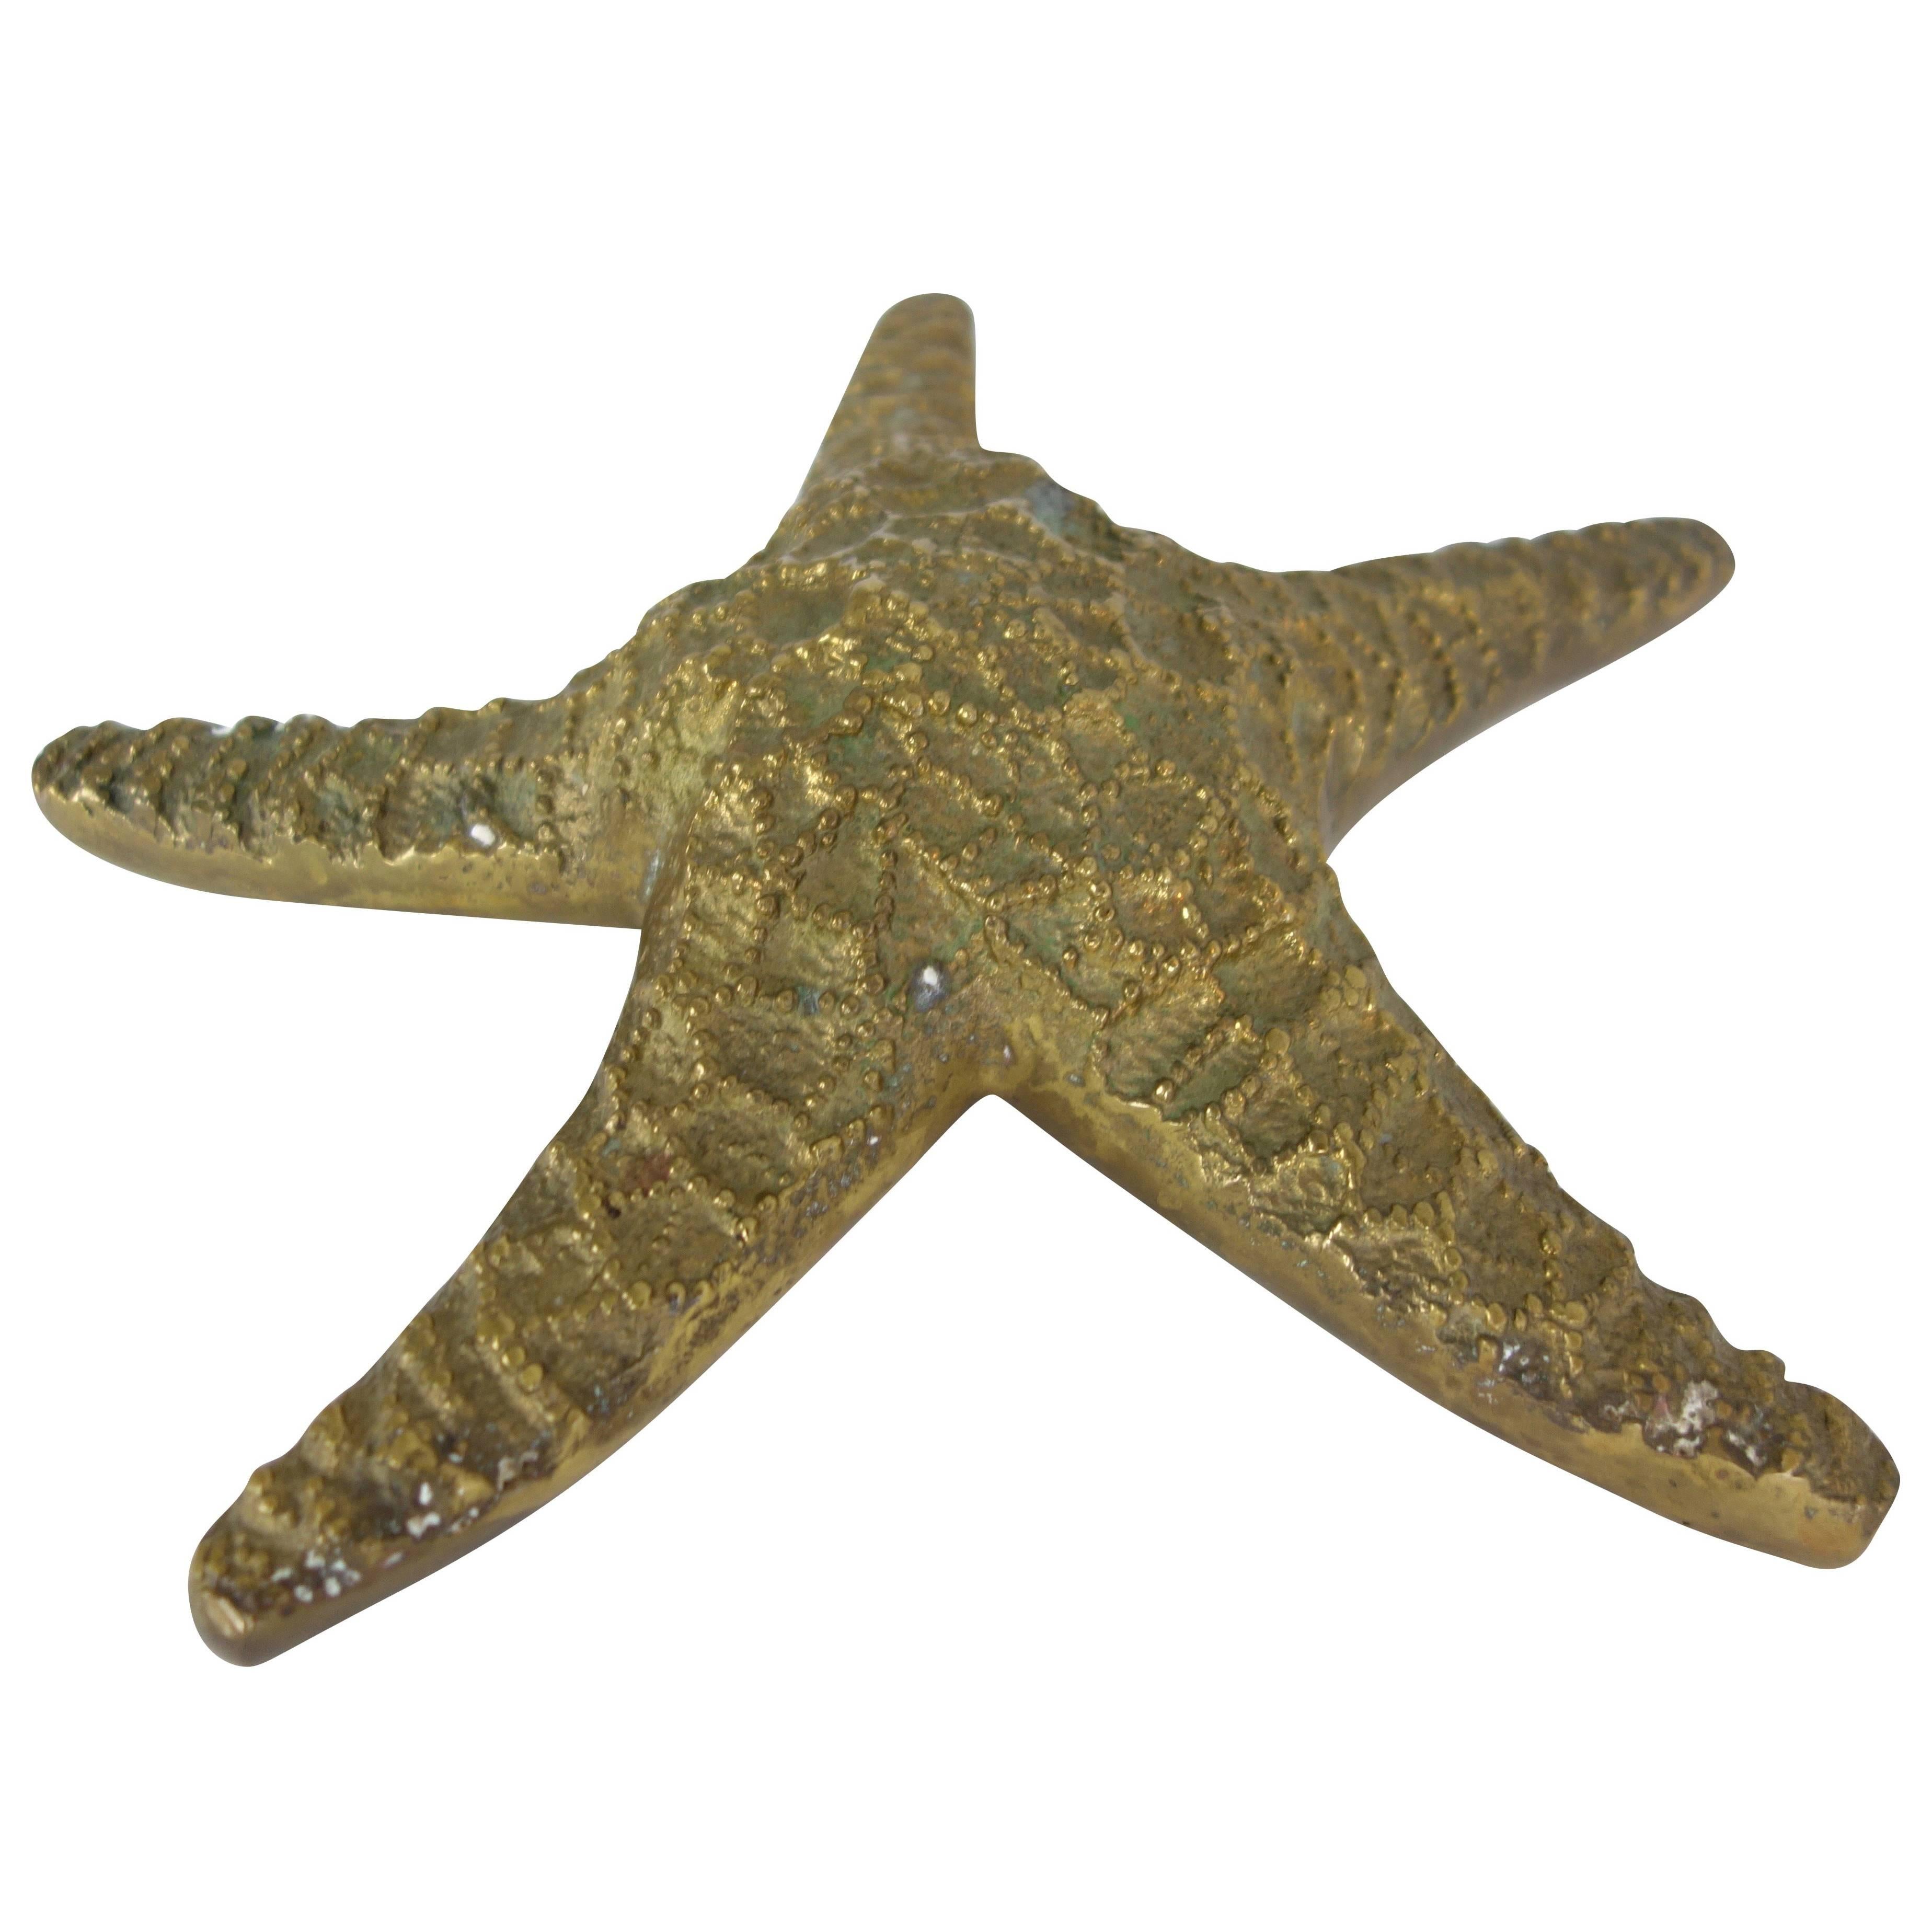 Vintage Brass Starfish